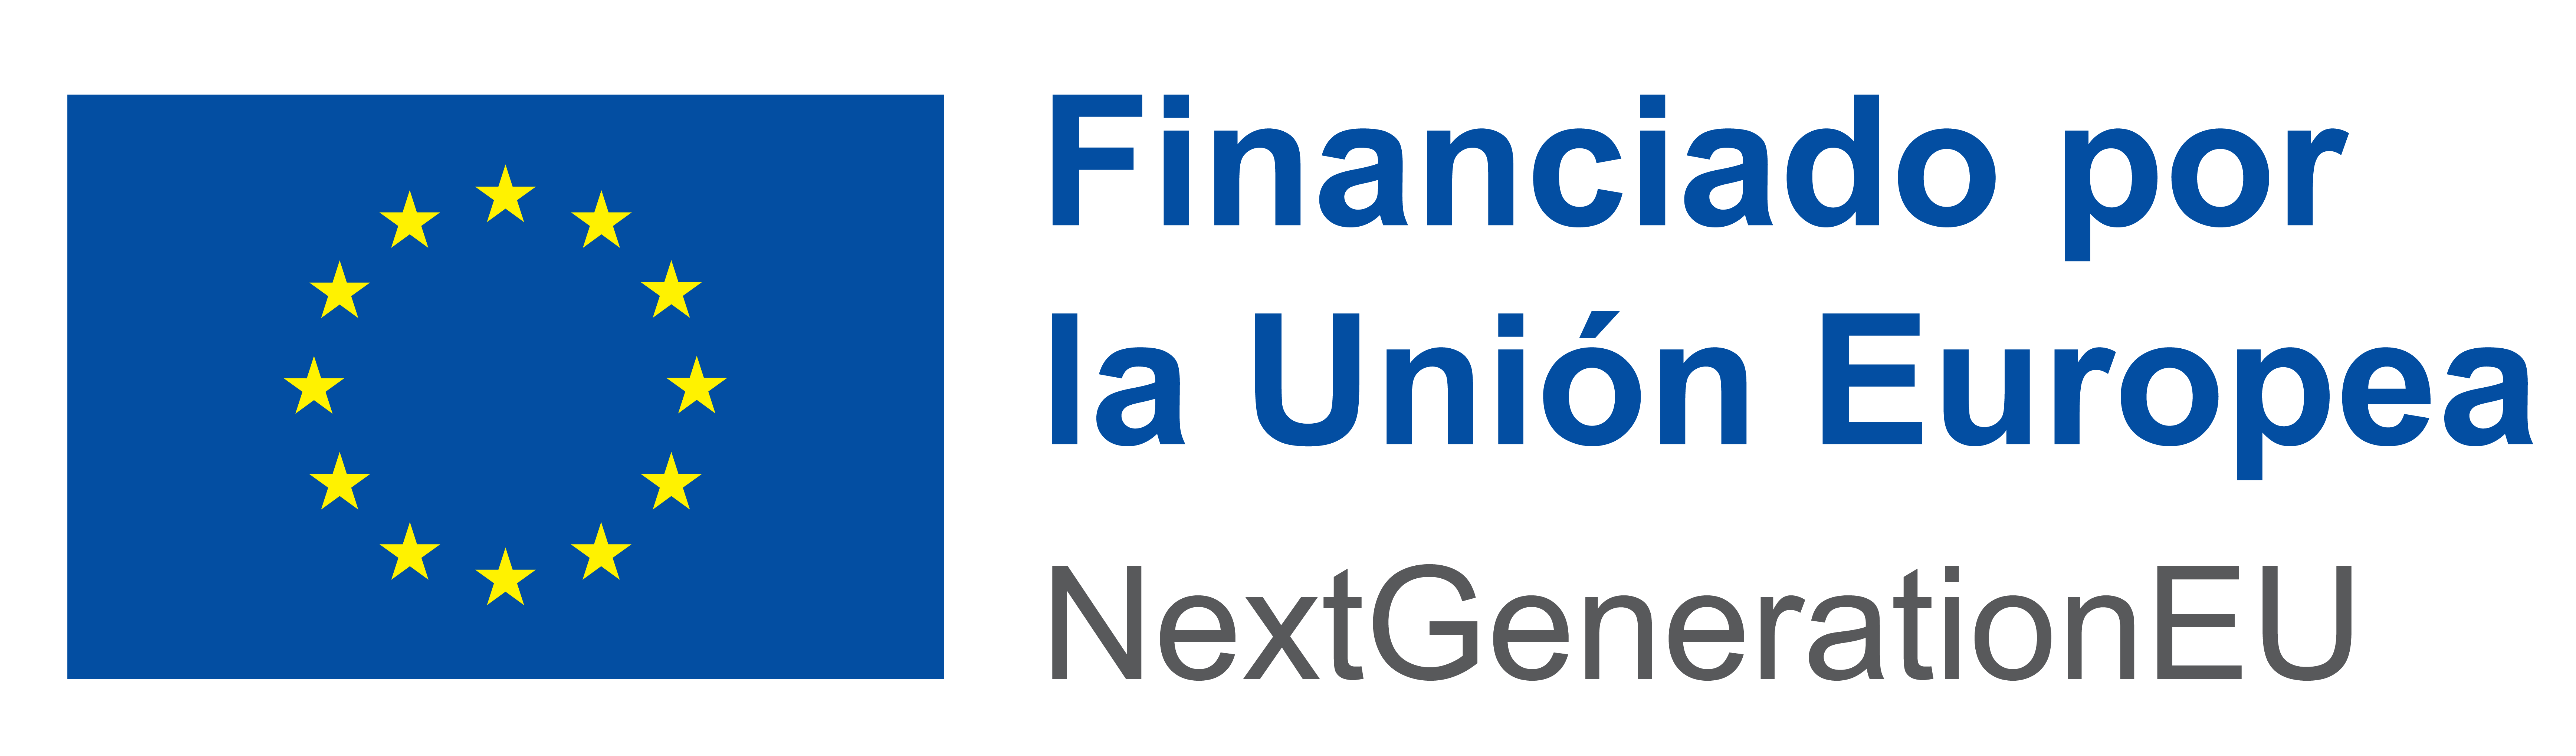 Logotipo Financiado por la Unión Europea NextGenerationEU